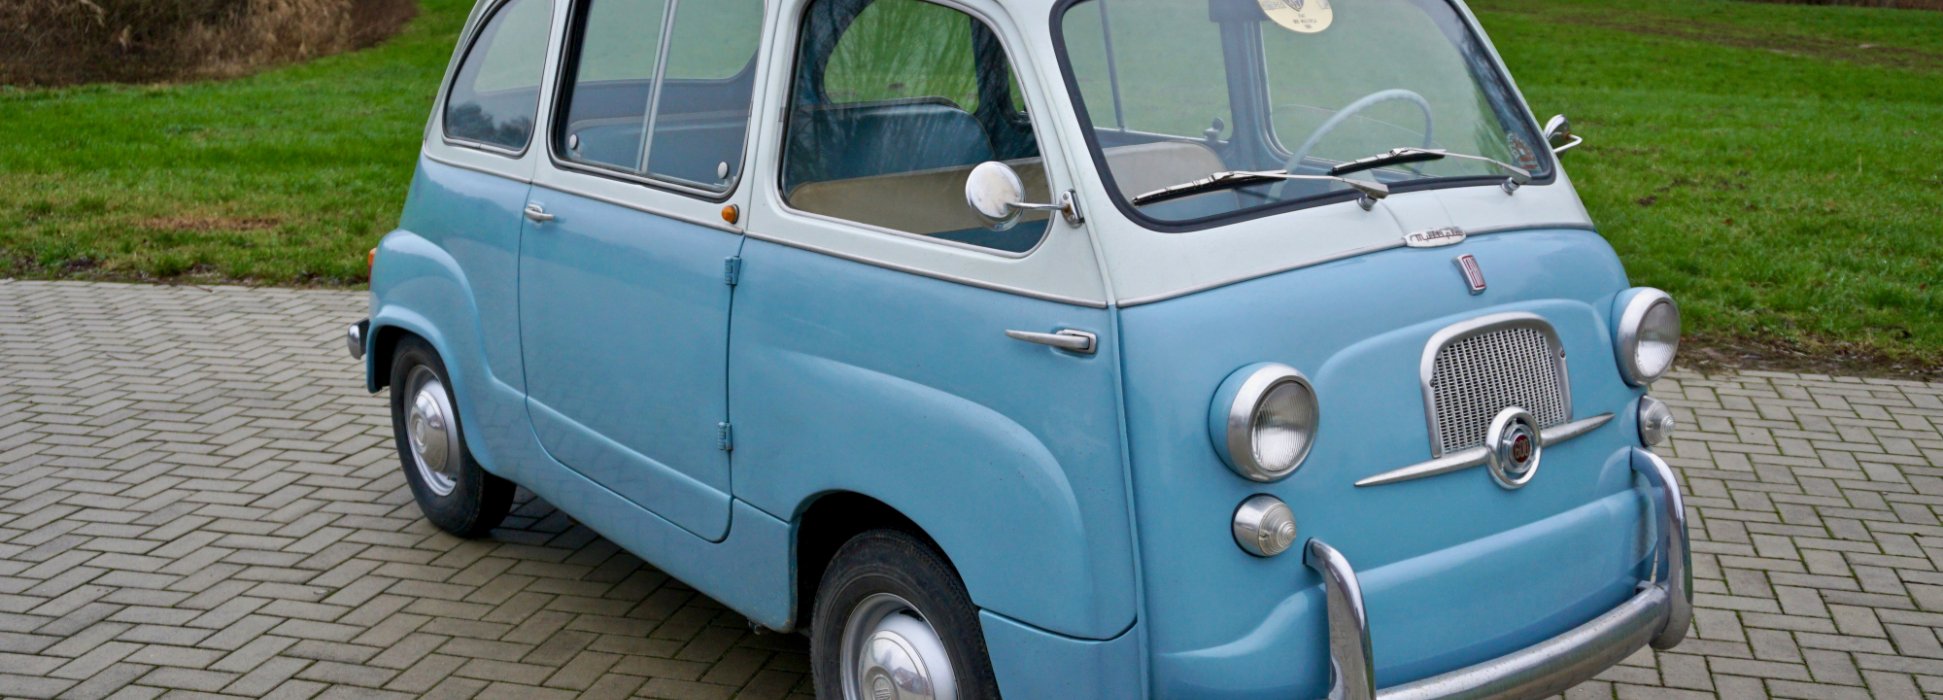 Fiat 600 Multipla Kleinbus 1